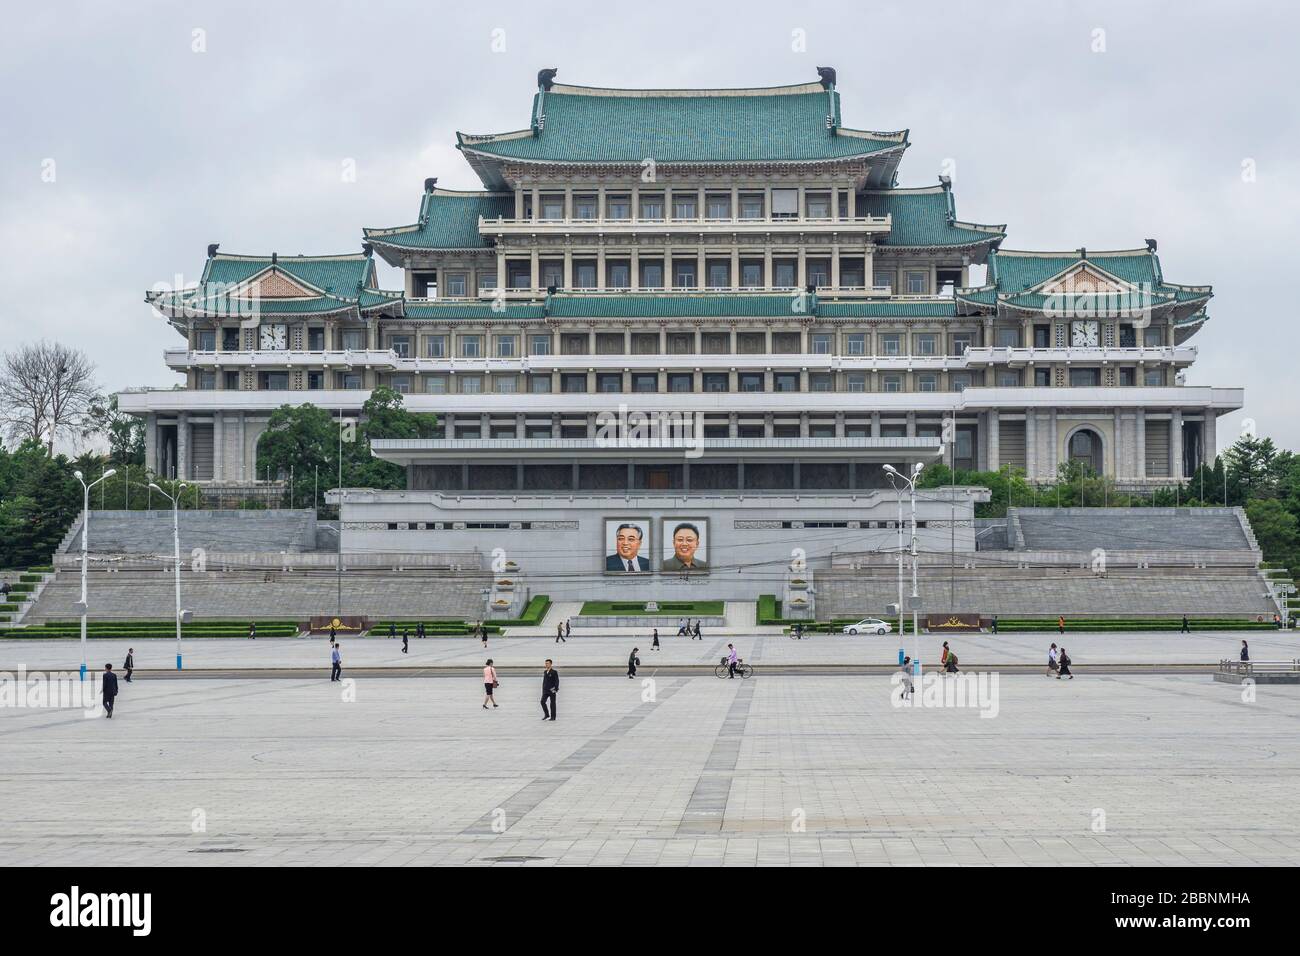 Grande maison d'étude populaire avec des portraits de deux présidents RPDC, Kim il Sung Square, capitale de la Corée du Nord, Pyongyang, Corée du Nord Banque D'Images